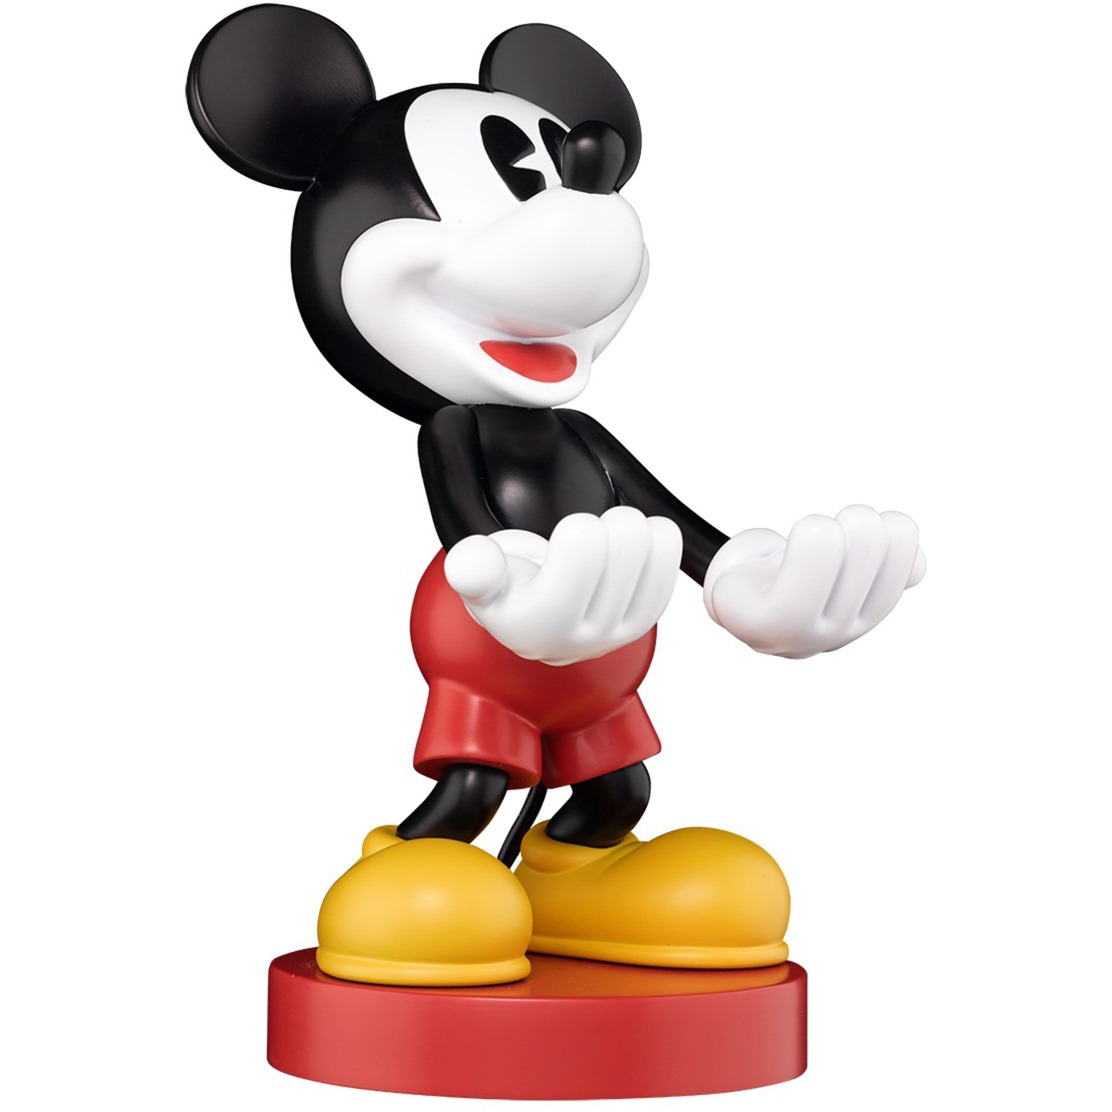 Image of Alternate - Mickey Mouse, Halterung online einkaufen bei Alternate